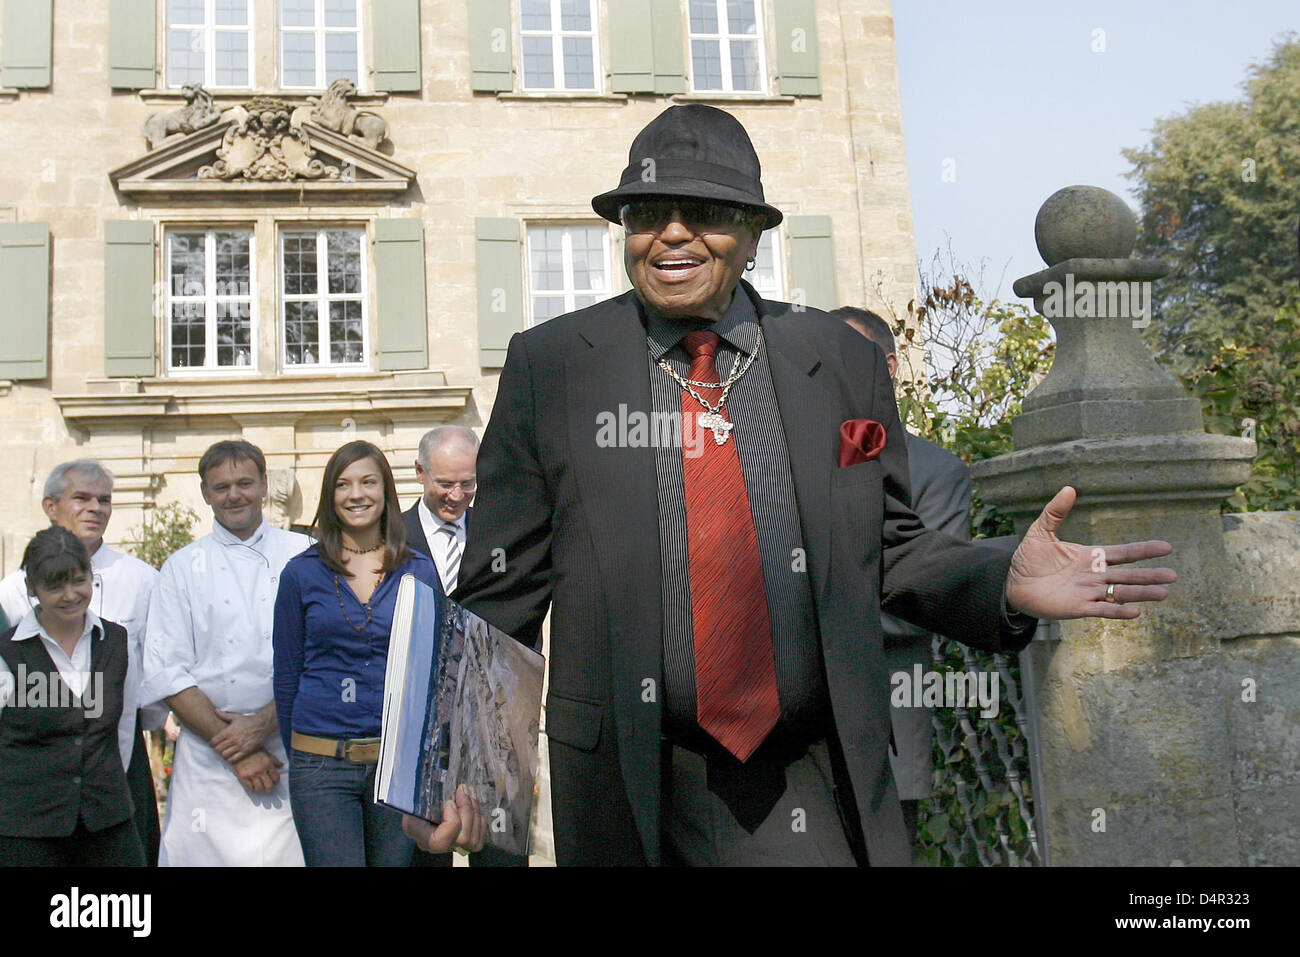 Joseph Jackson, Vater des späten Popstar Michael Jackson, posiert für die Fotografen bei seinem Besuch in Schloss Atzelsberg bei Marloffstein, Deutschland, 21. September 2009. Foto: DANIEL KARMANN Stockfoto